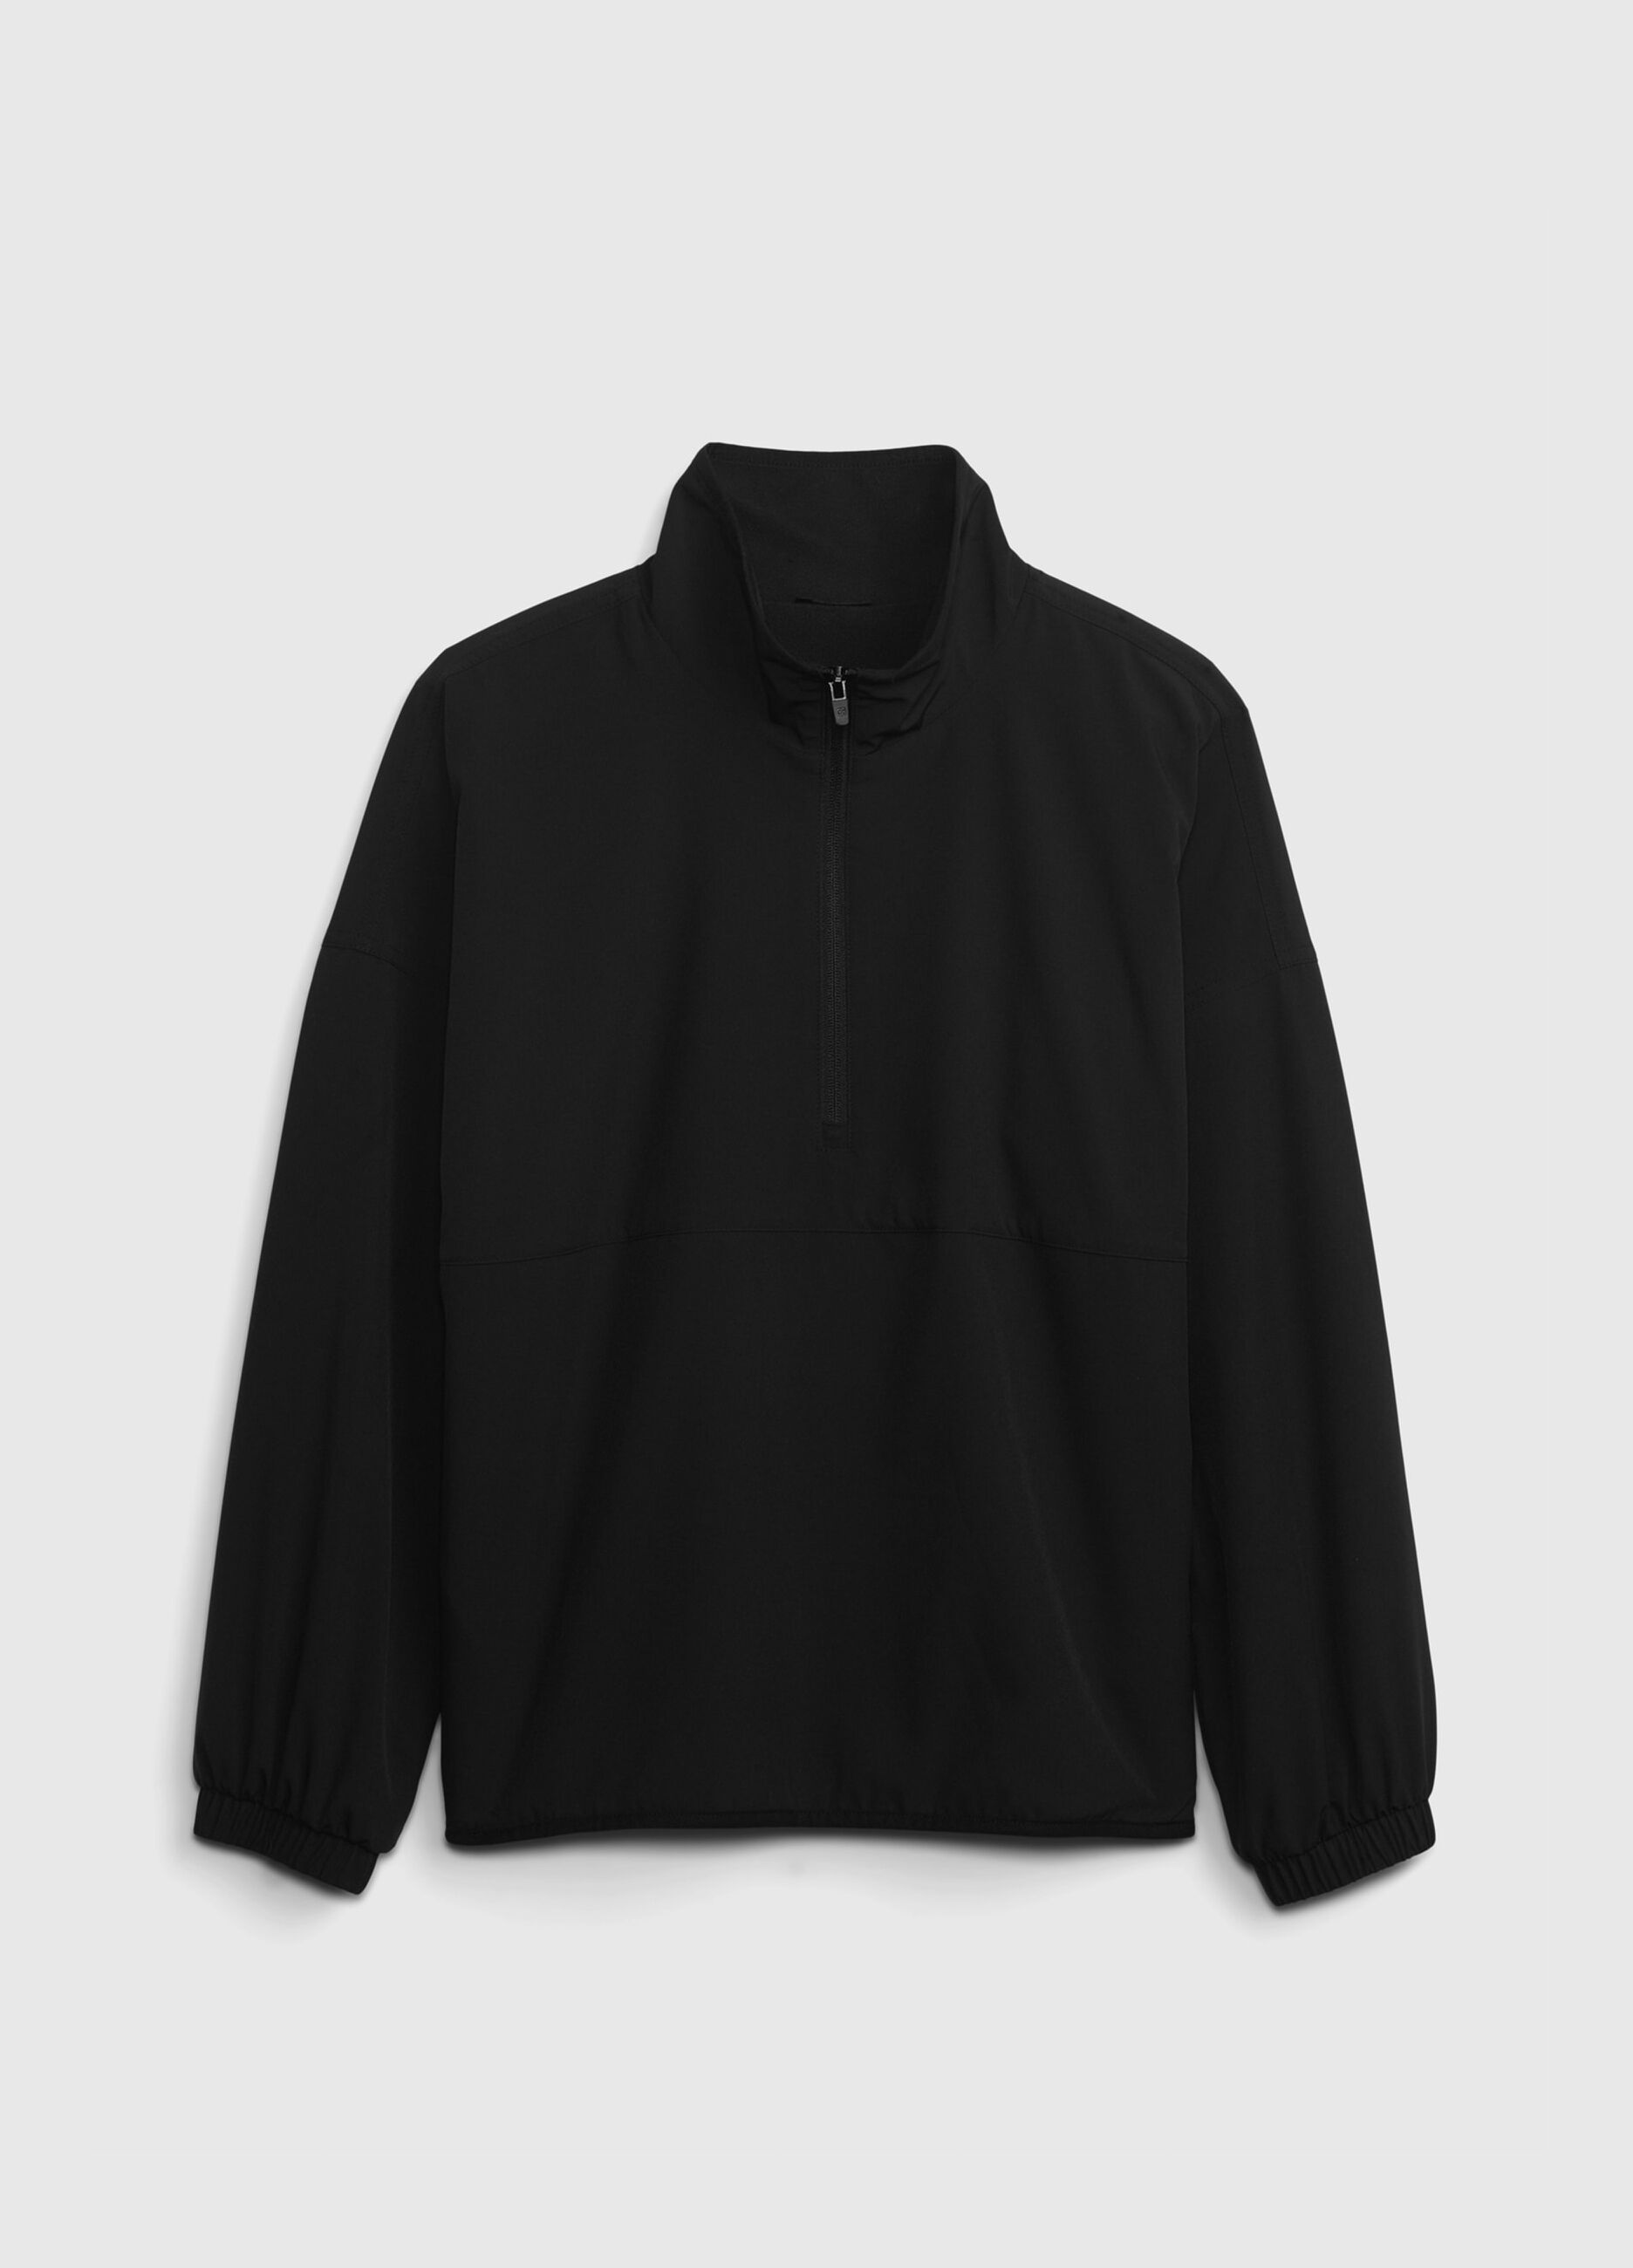 Half-zip sweatshirt with fleece lining._3